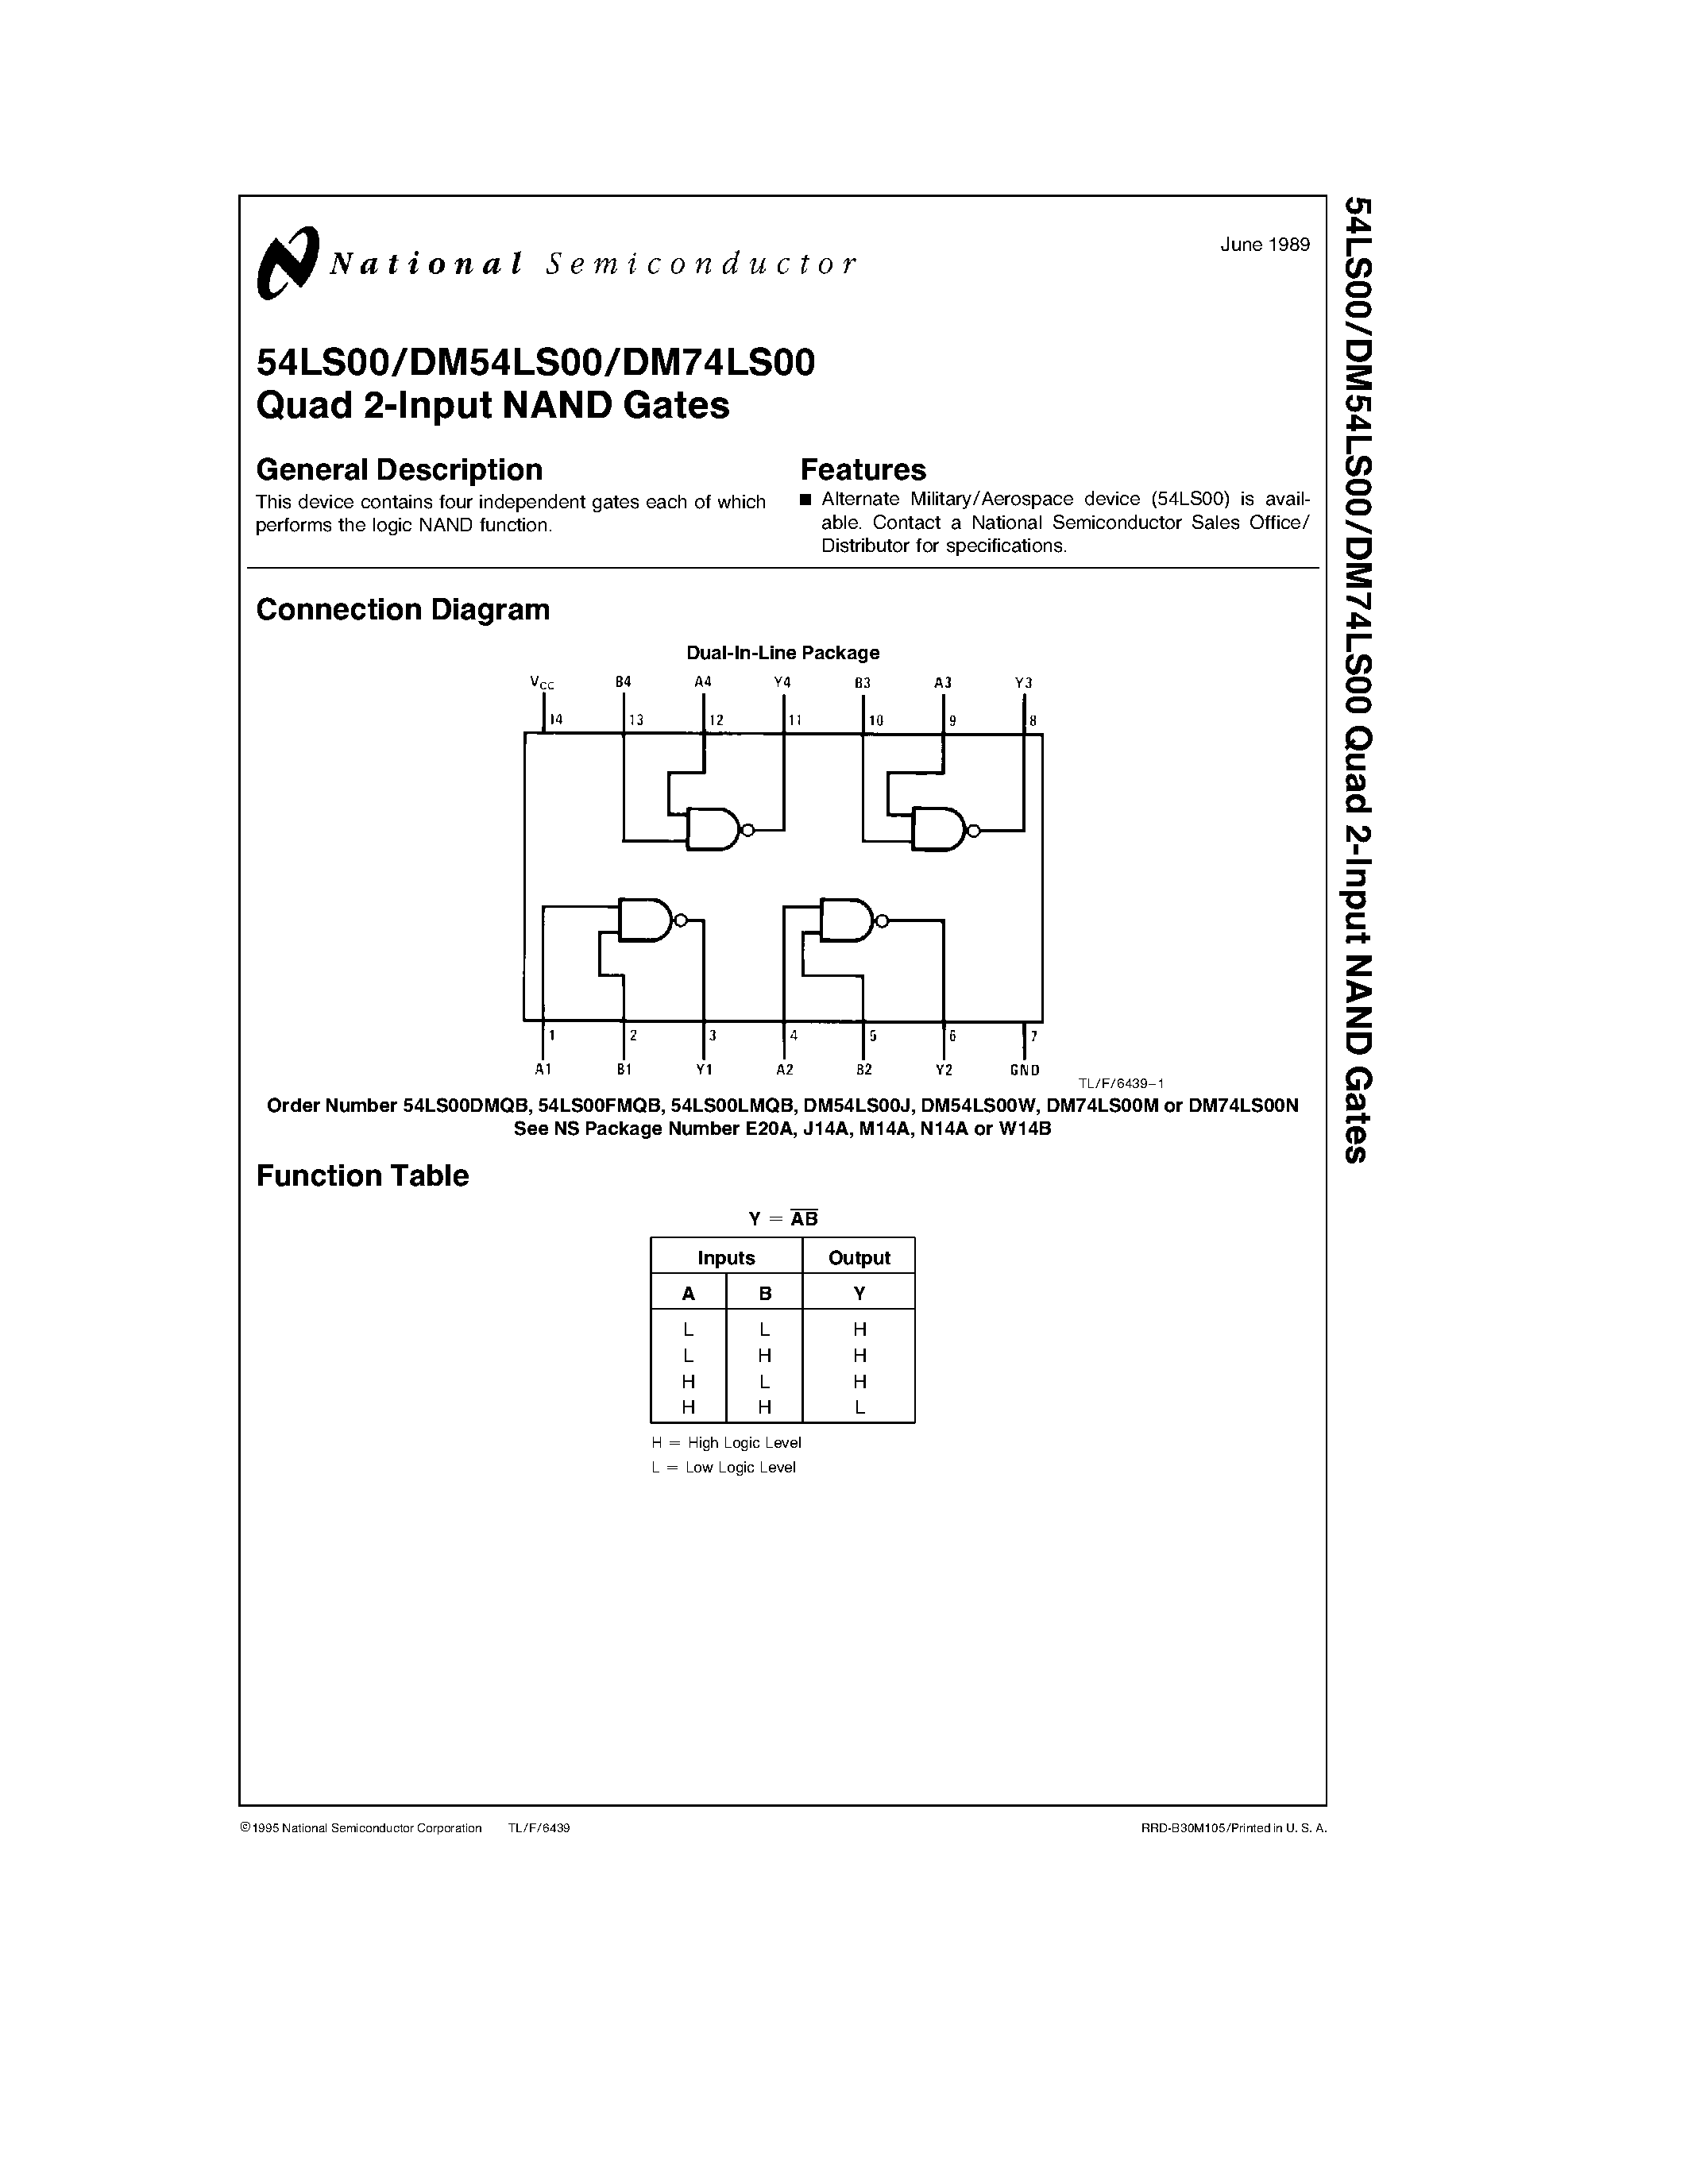 Даташит DM74LS00 - Quad 2-Input NAND Gates страница 1